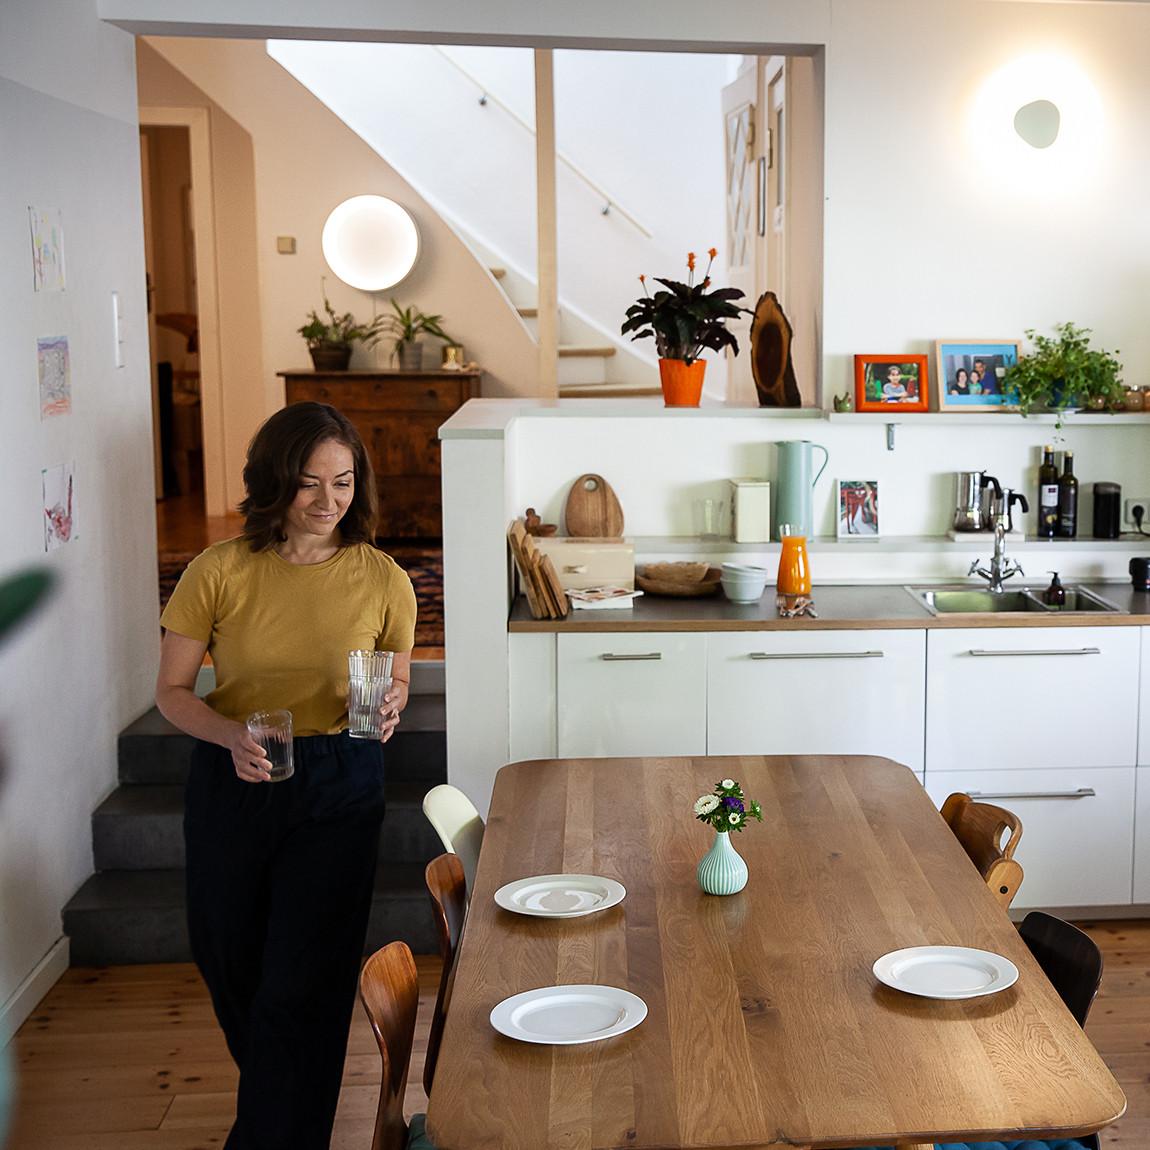 Ledvance SMART+ Ceiling Cylinder CCT in Küche mit Frau